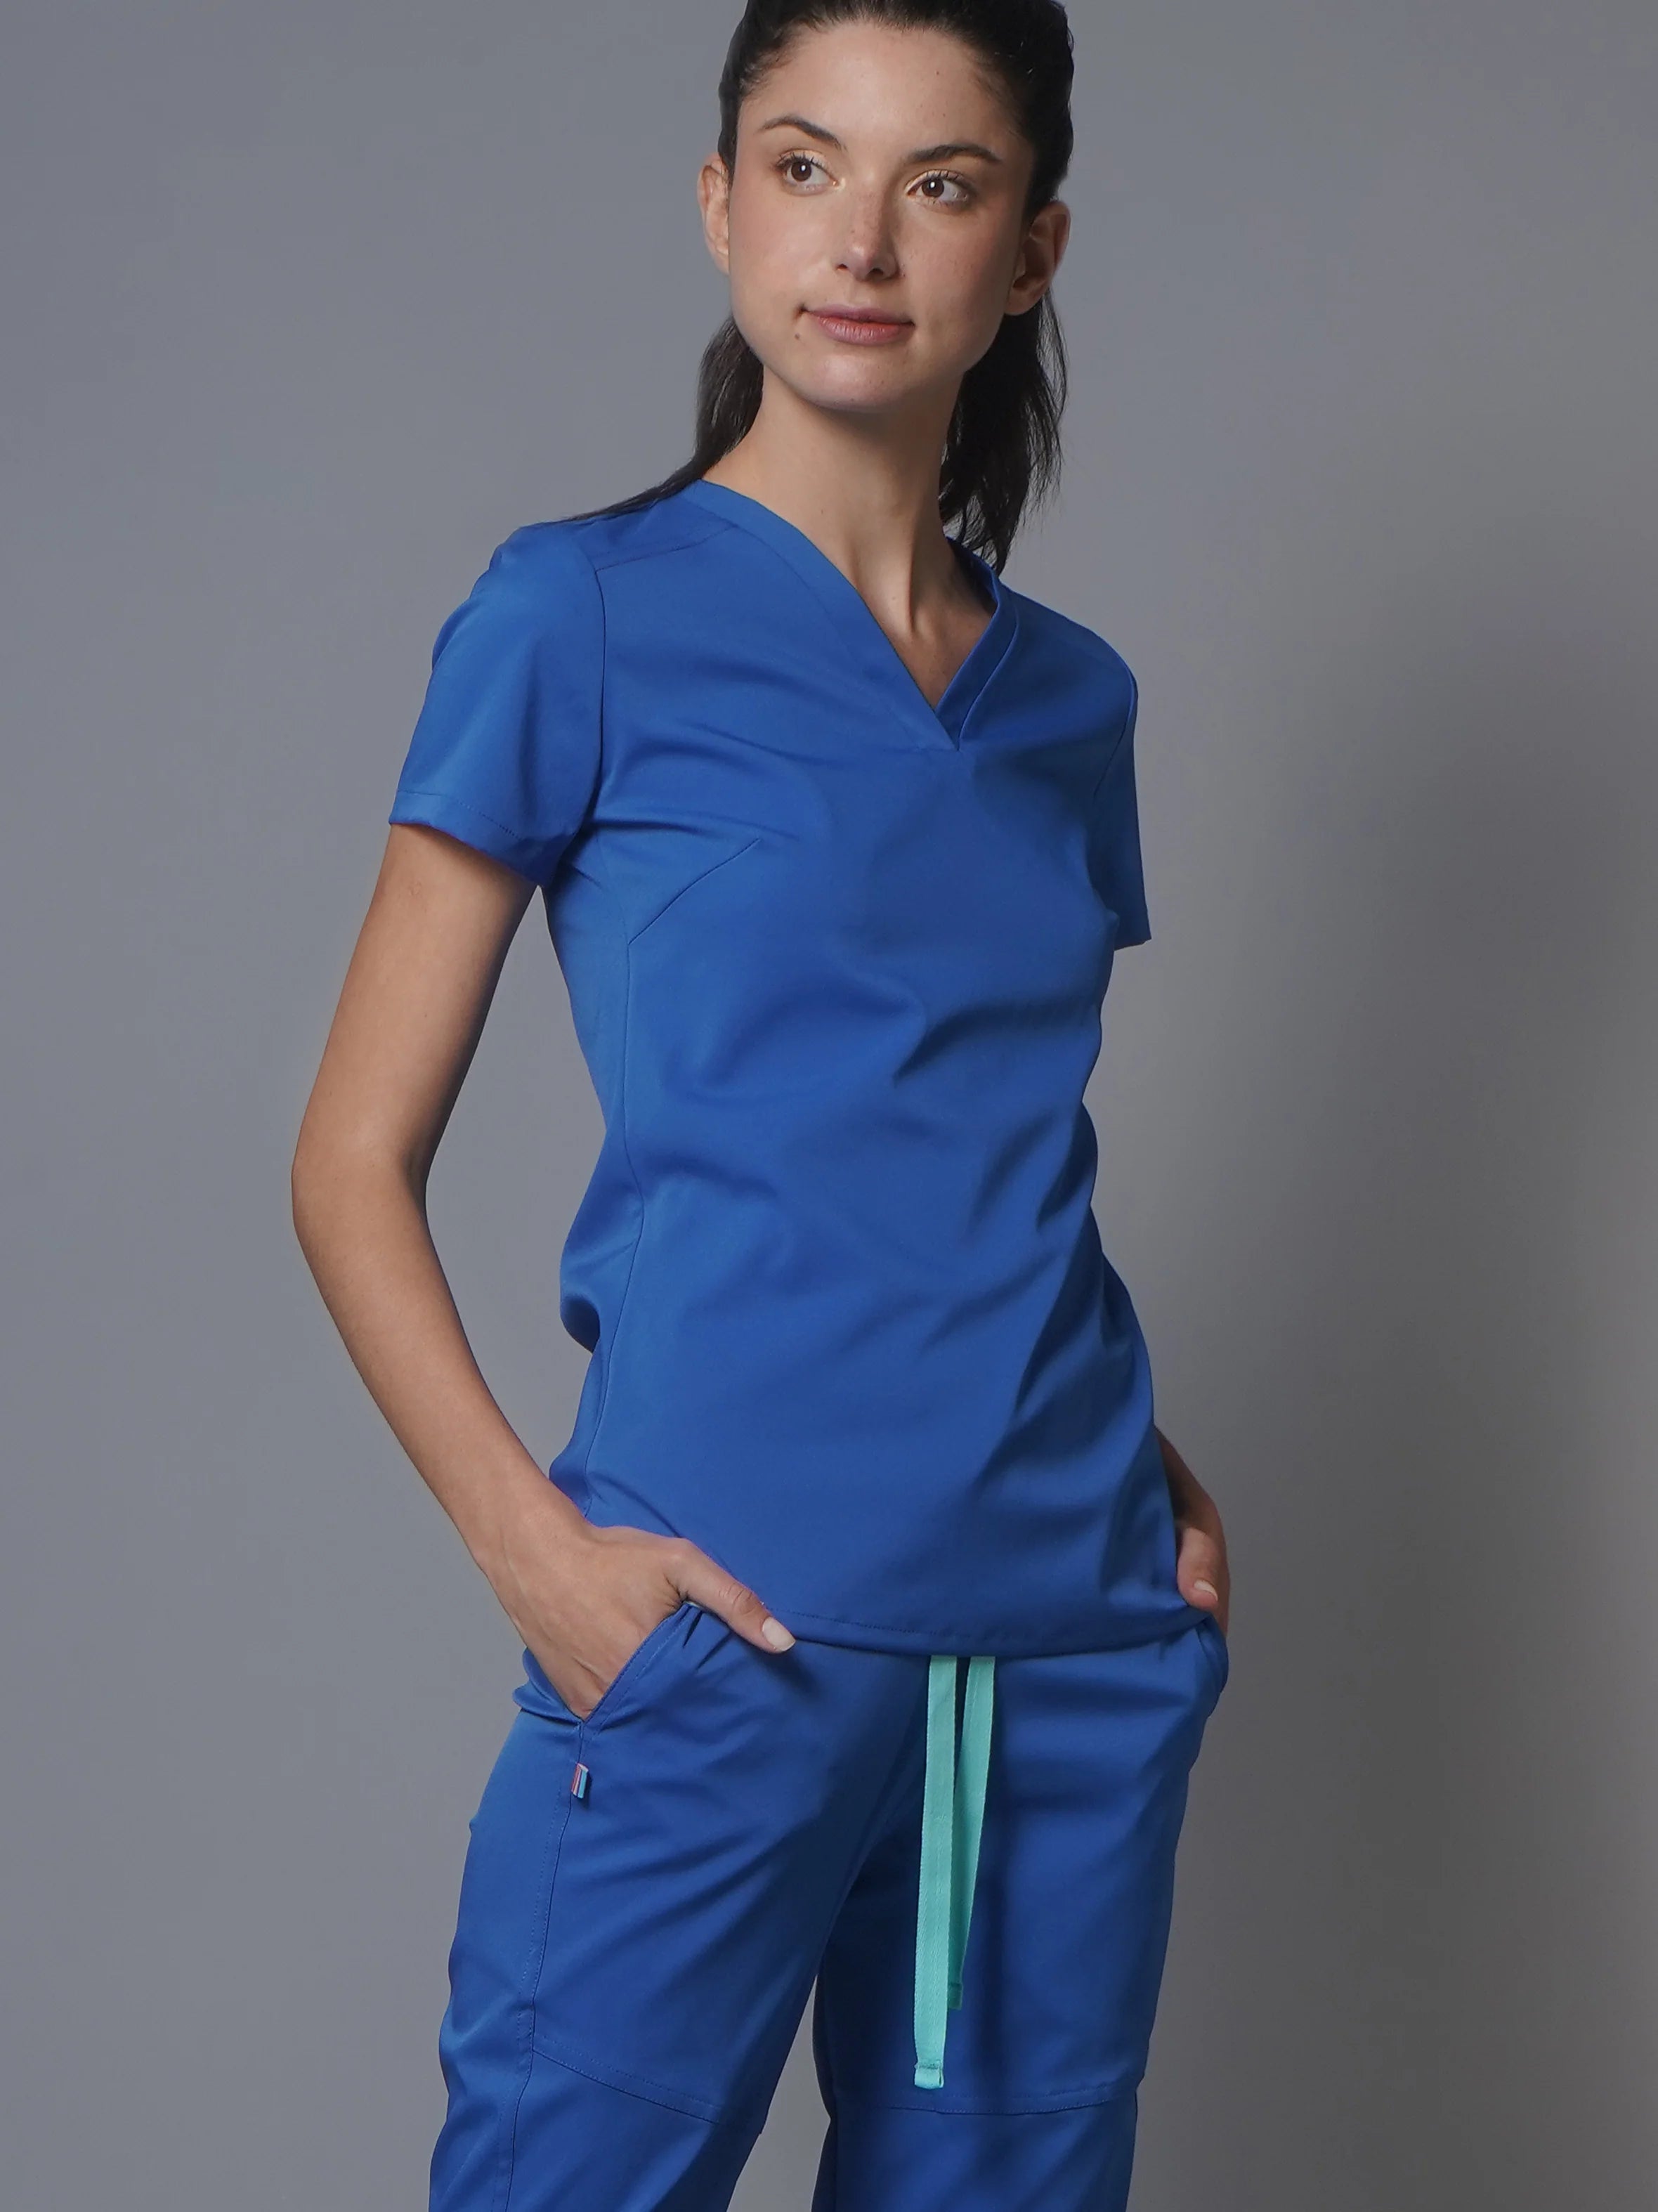 Top Marsella Royal. Top uniforme médico para mujer.